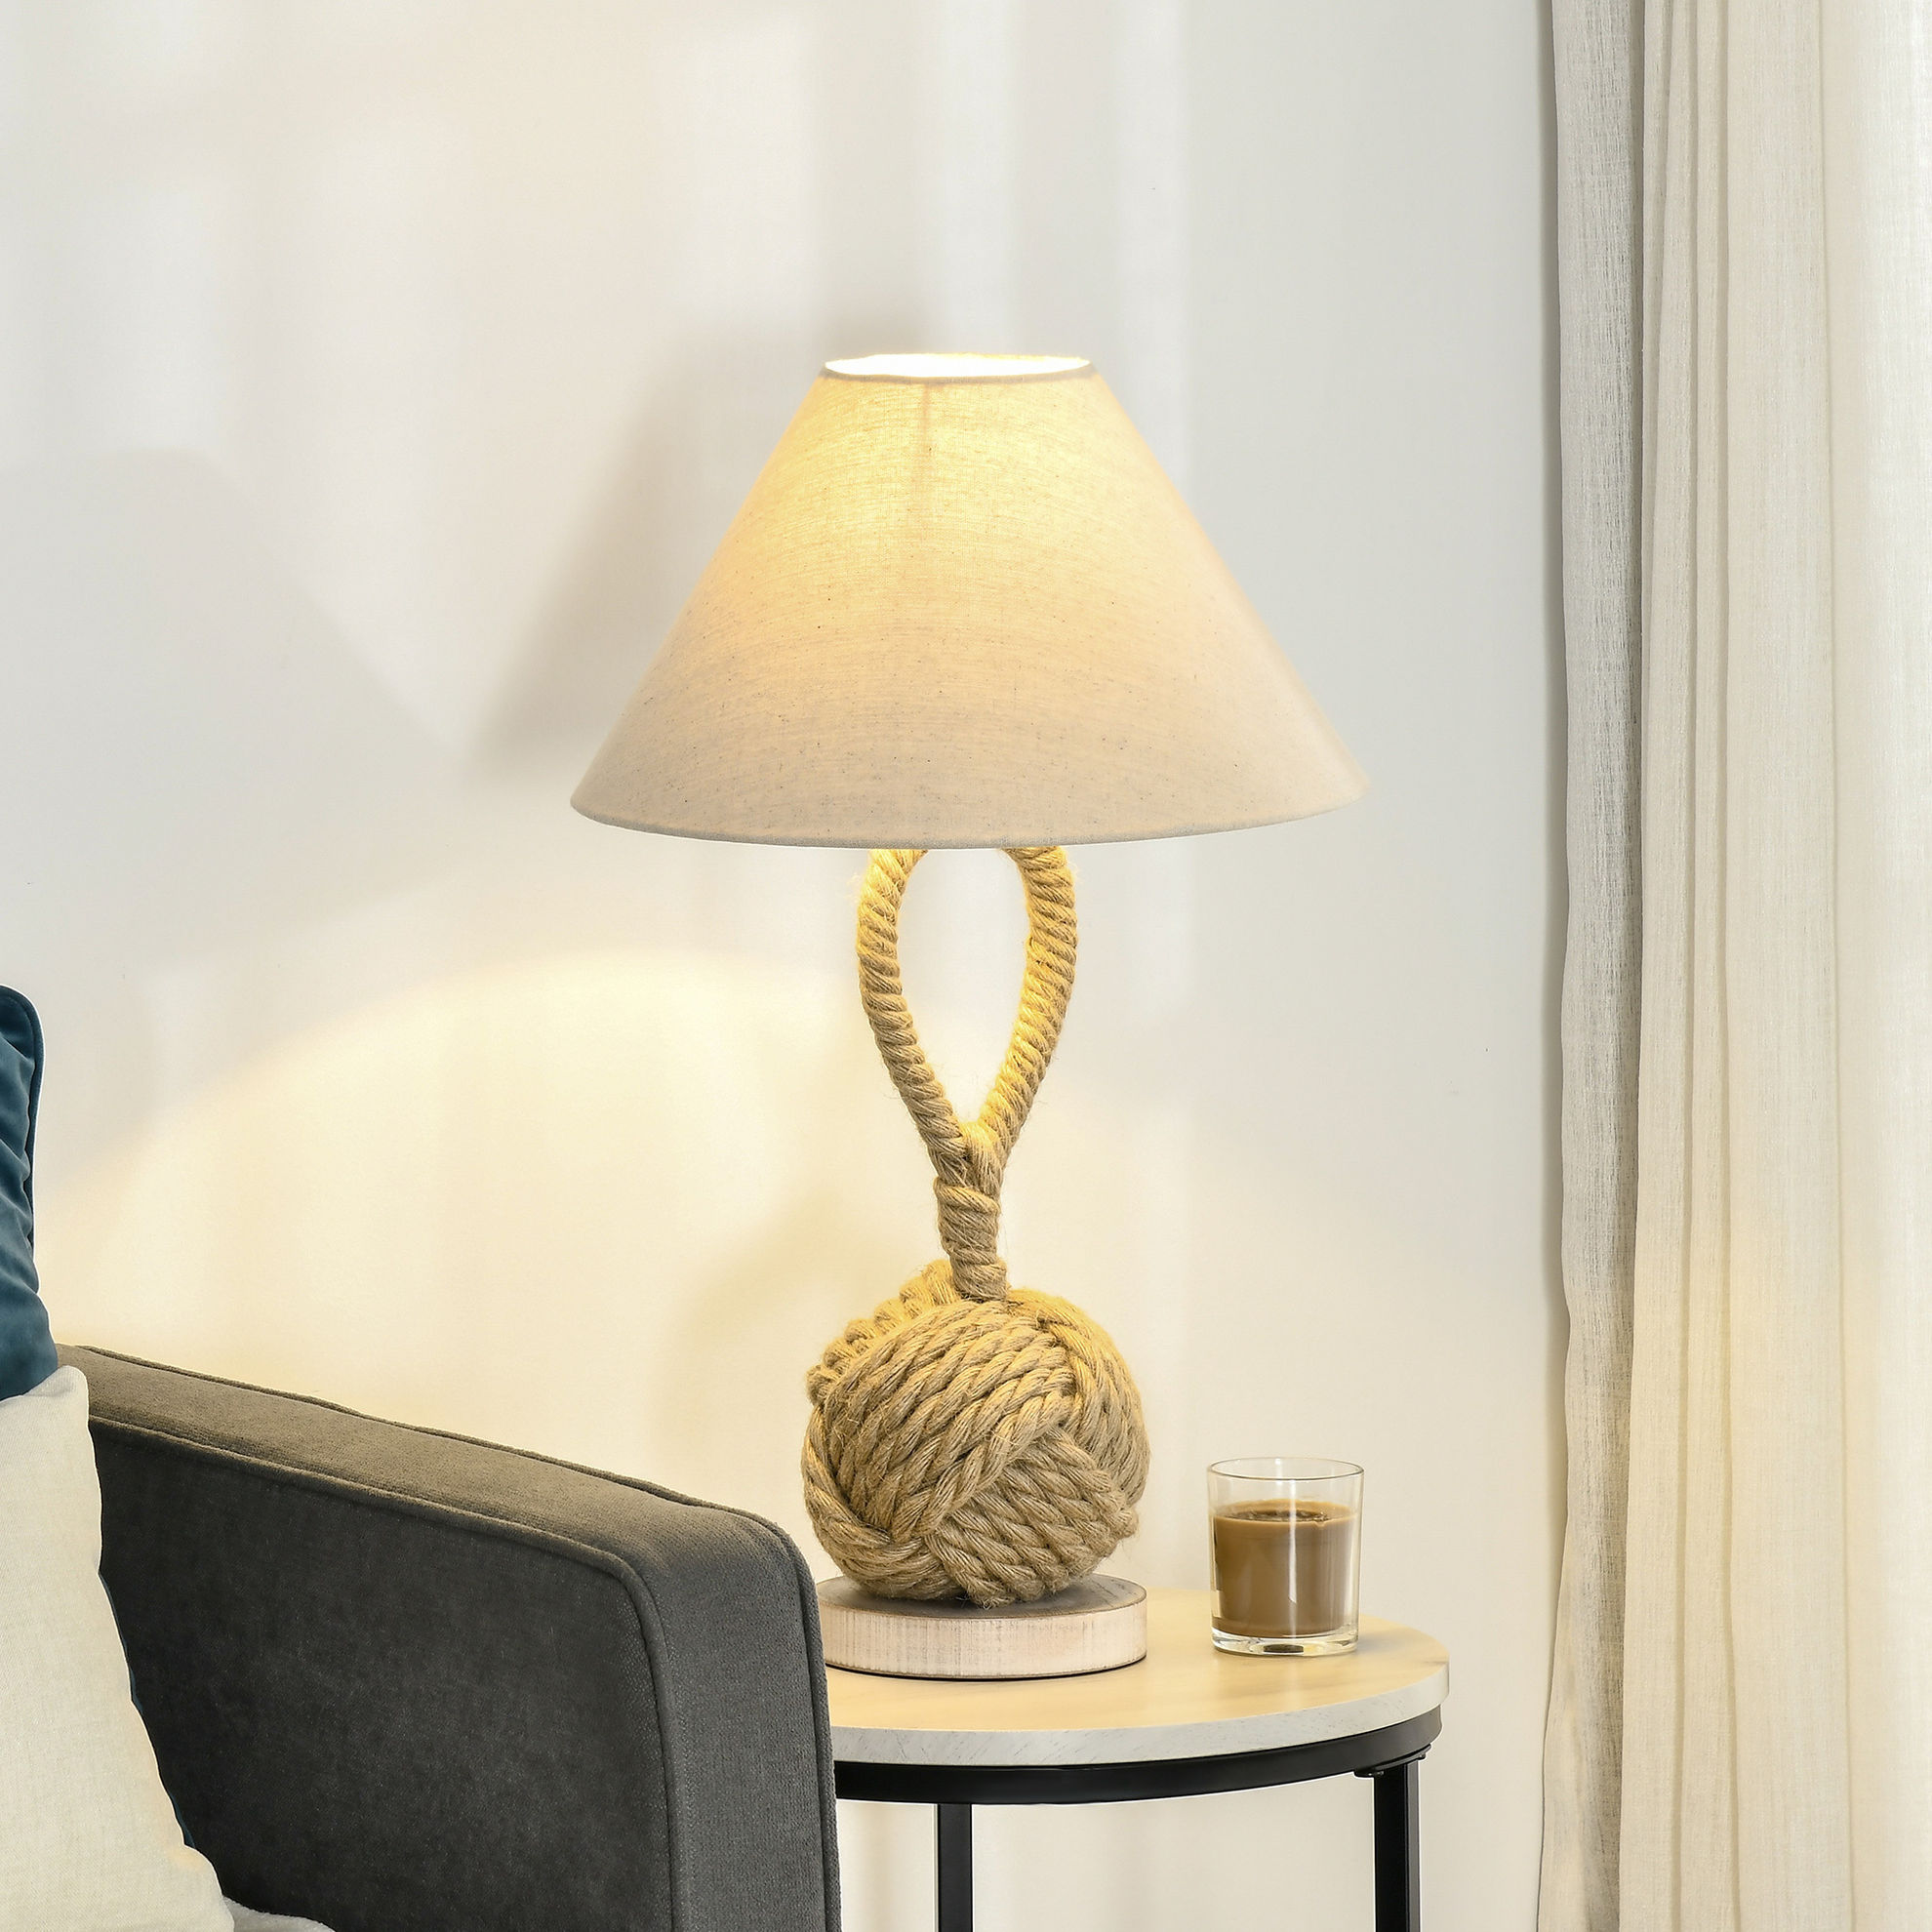 Tischlampe mit Kabel natur Farbe: beige, weiß | Weltbild.de